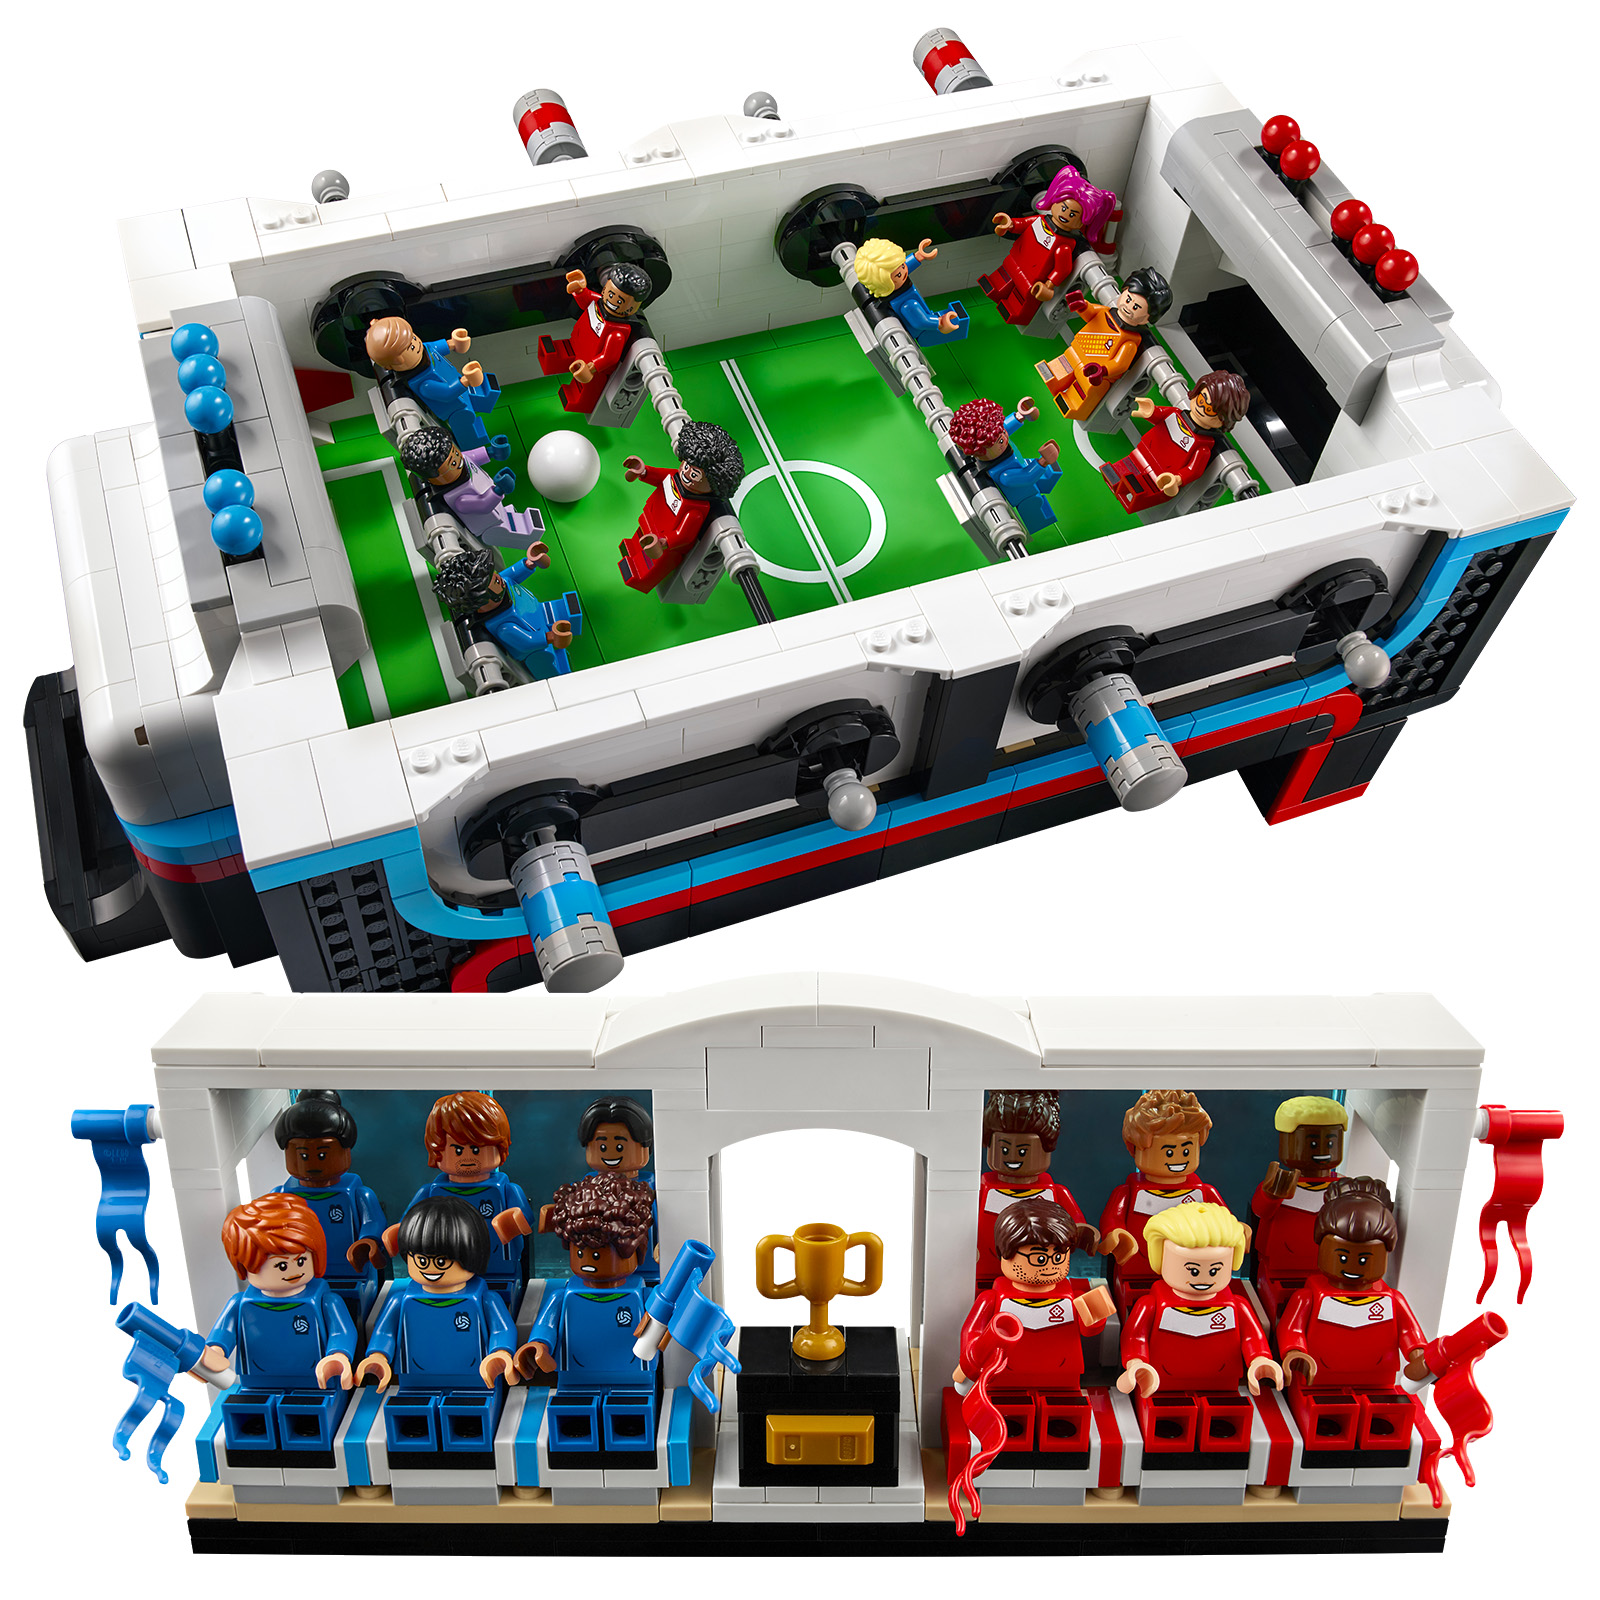 Les figurines de football LEGO dont nous avons besoin pour cette